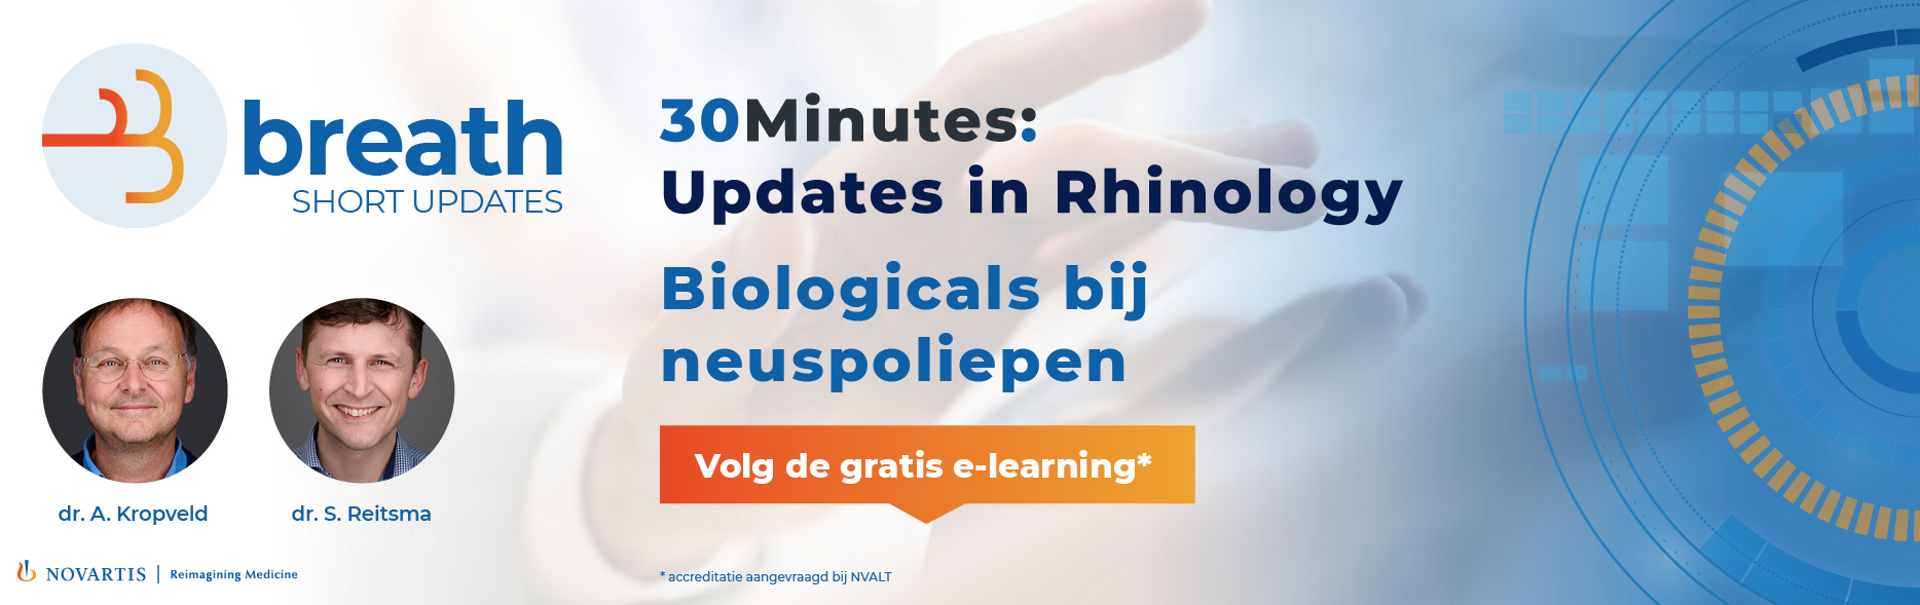 Banner Breath 30 minutes - Updates in rhinology